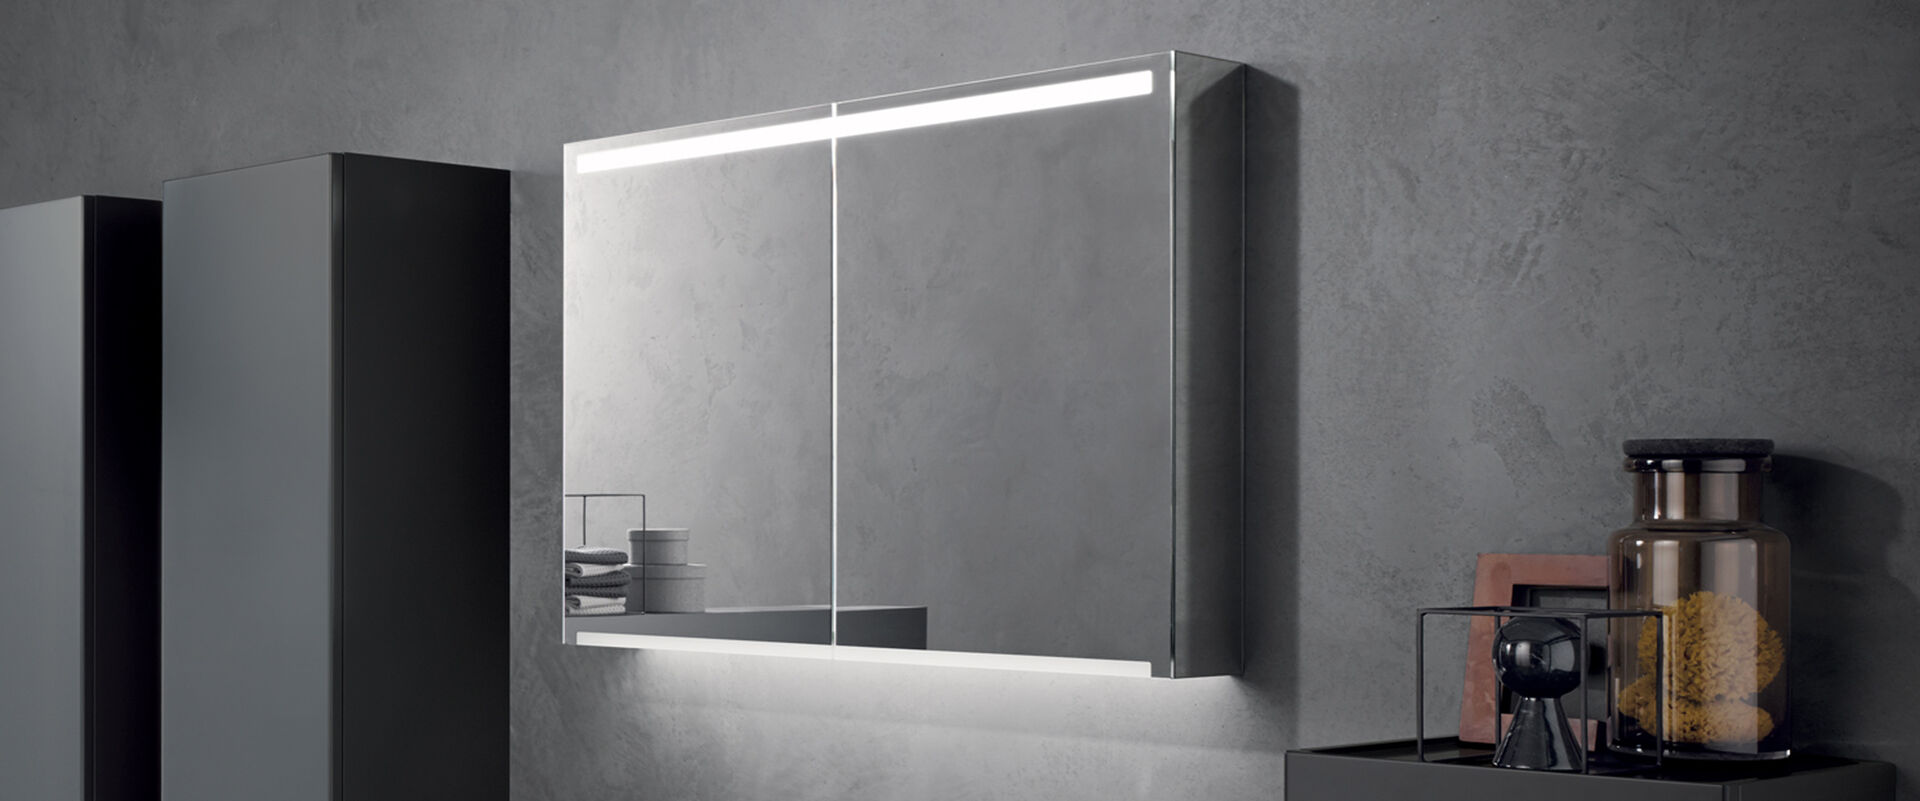 Doppelseitiger Spiegelschrank beleuchtet an einer grauen Wand.